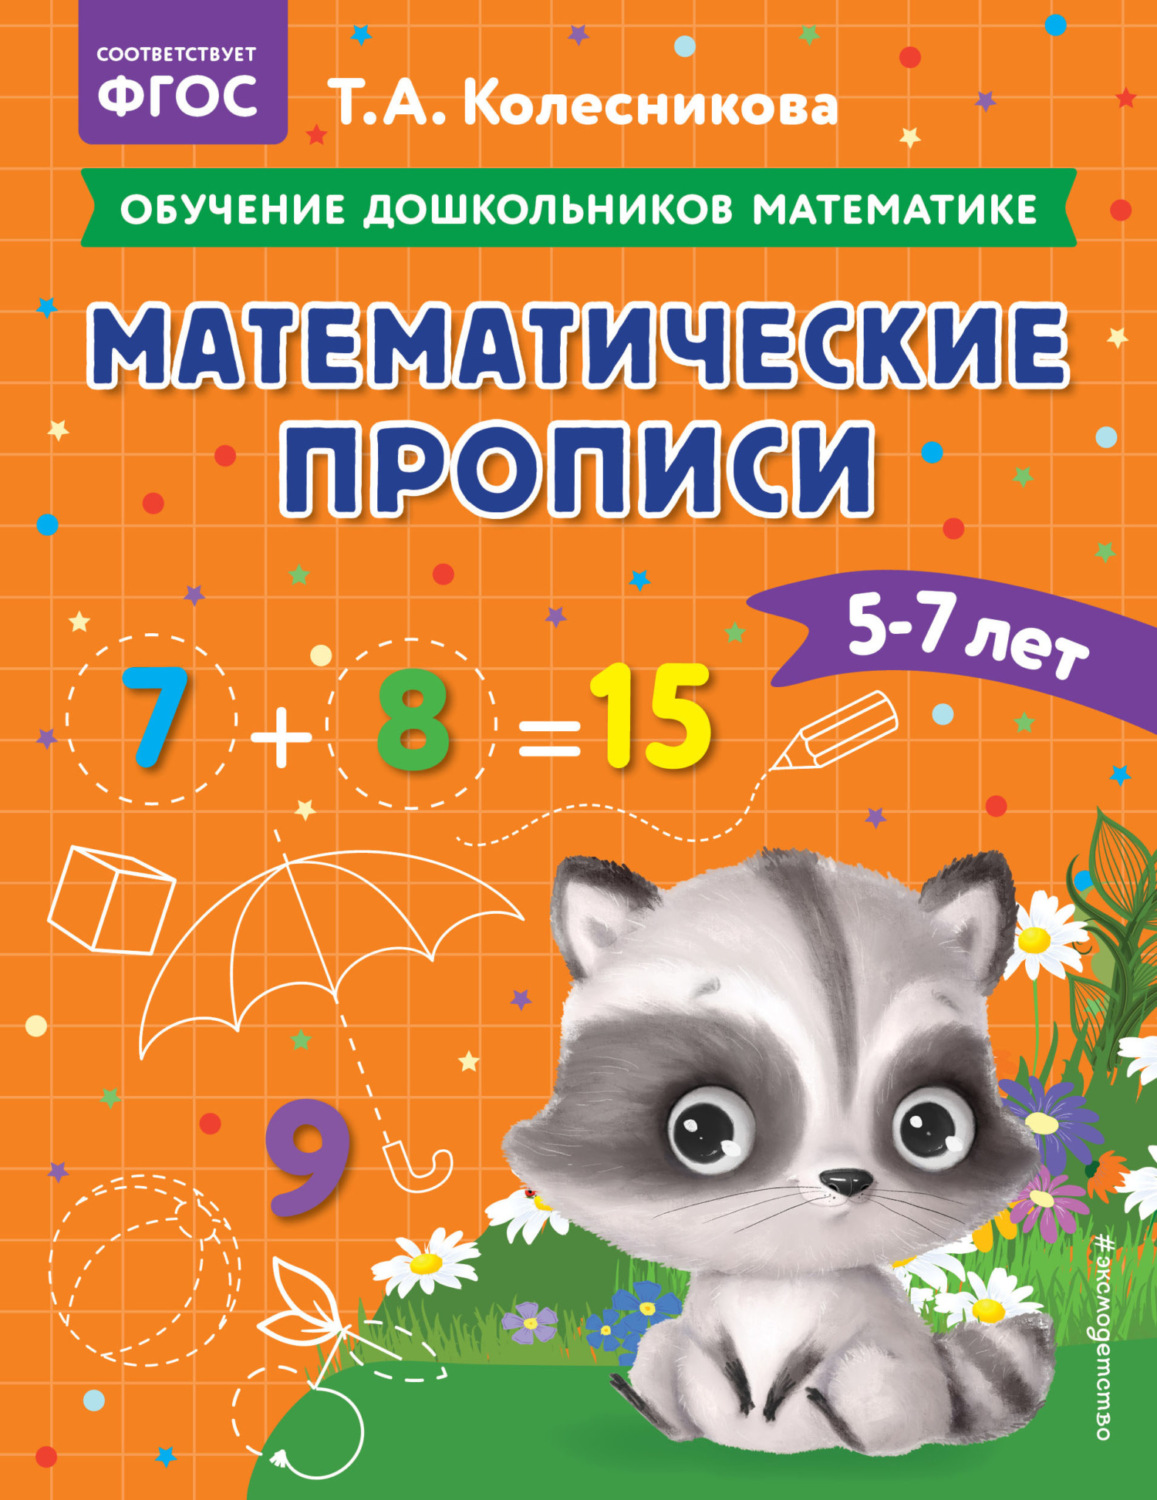 Обучение математике дошкольников - книги и учебно-методические пособия